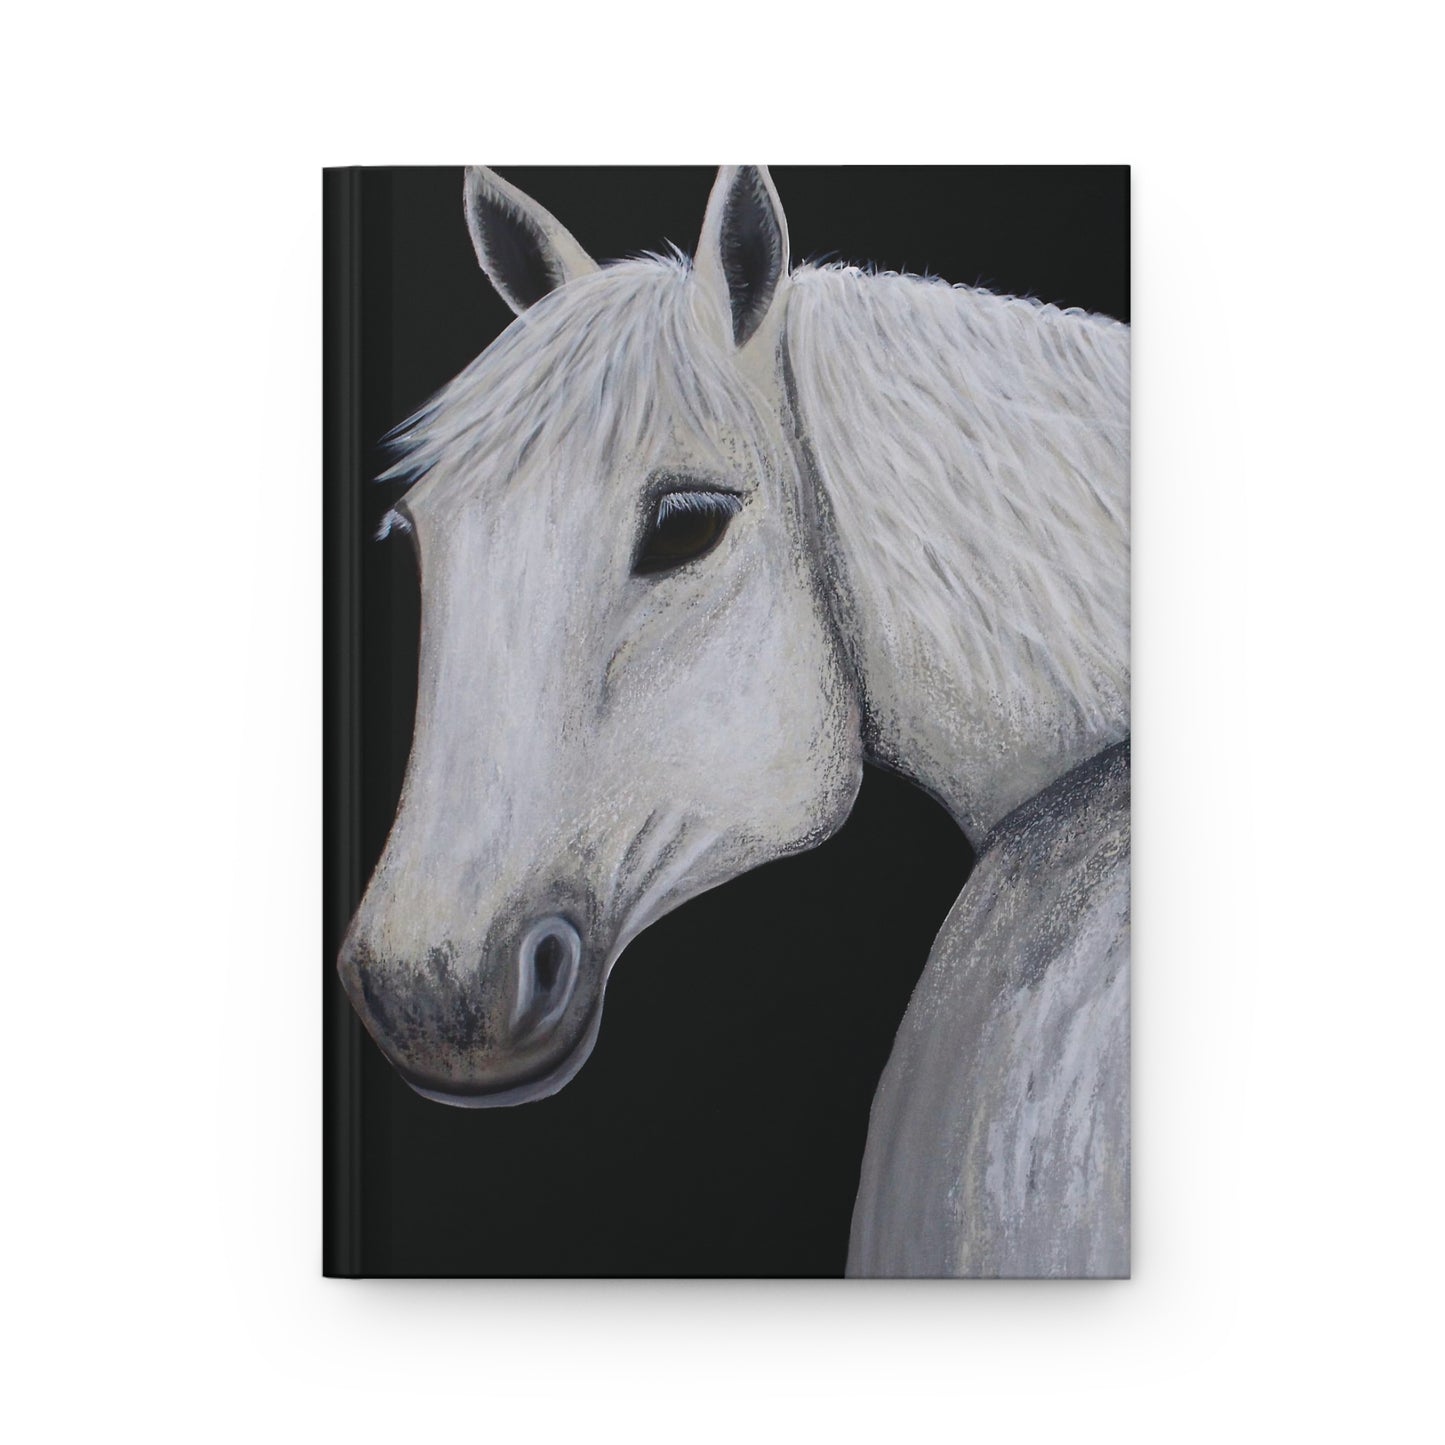 Hardcover Journal - Original Art Journal - Art Journal -Equestrian Art - Ghost